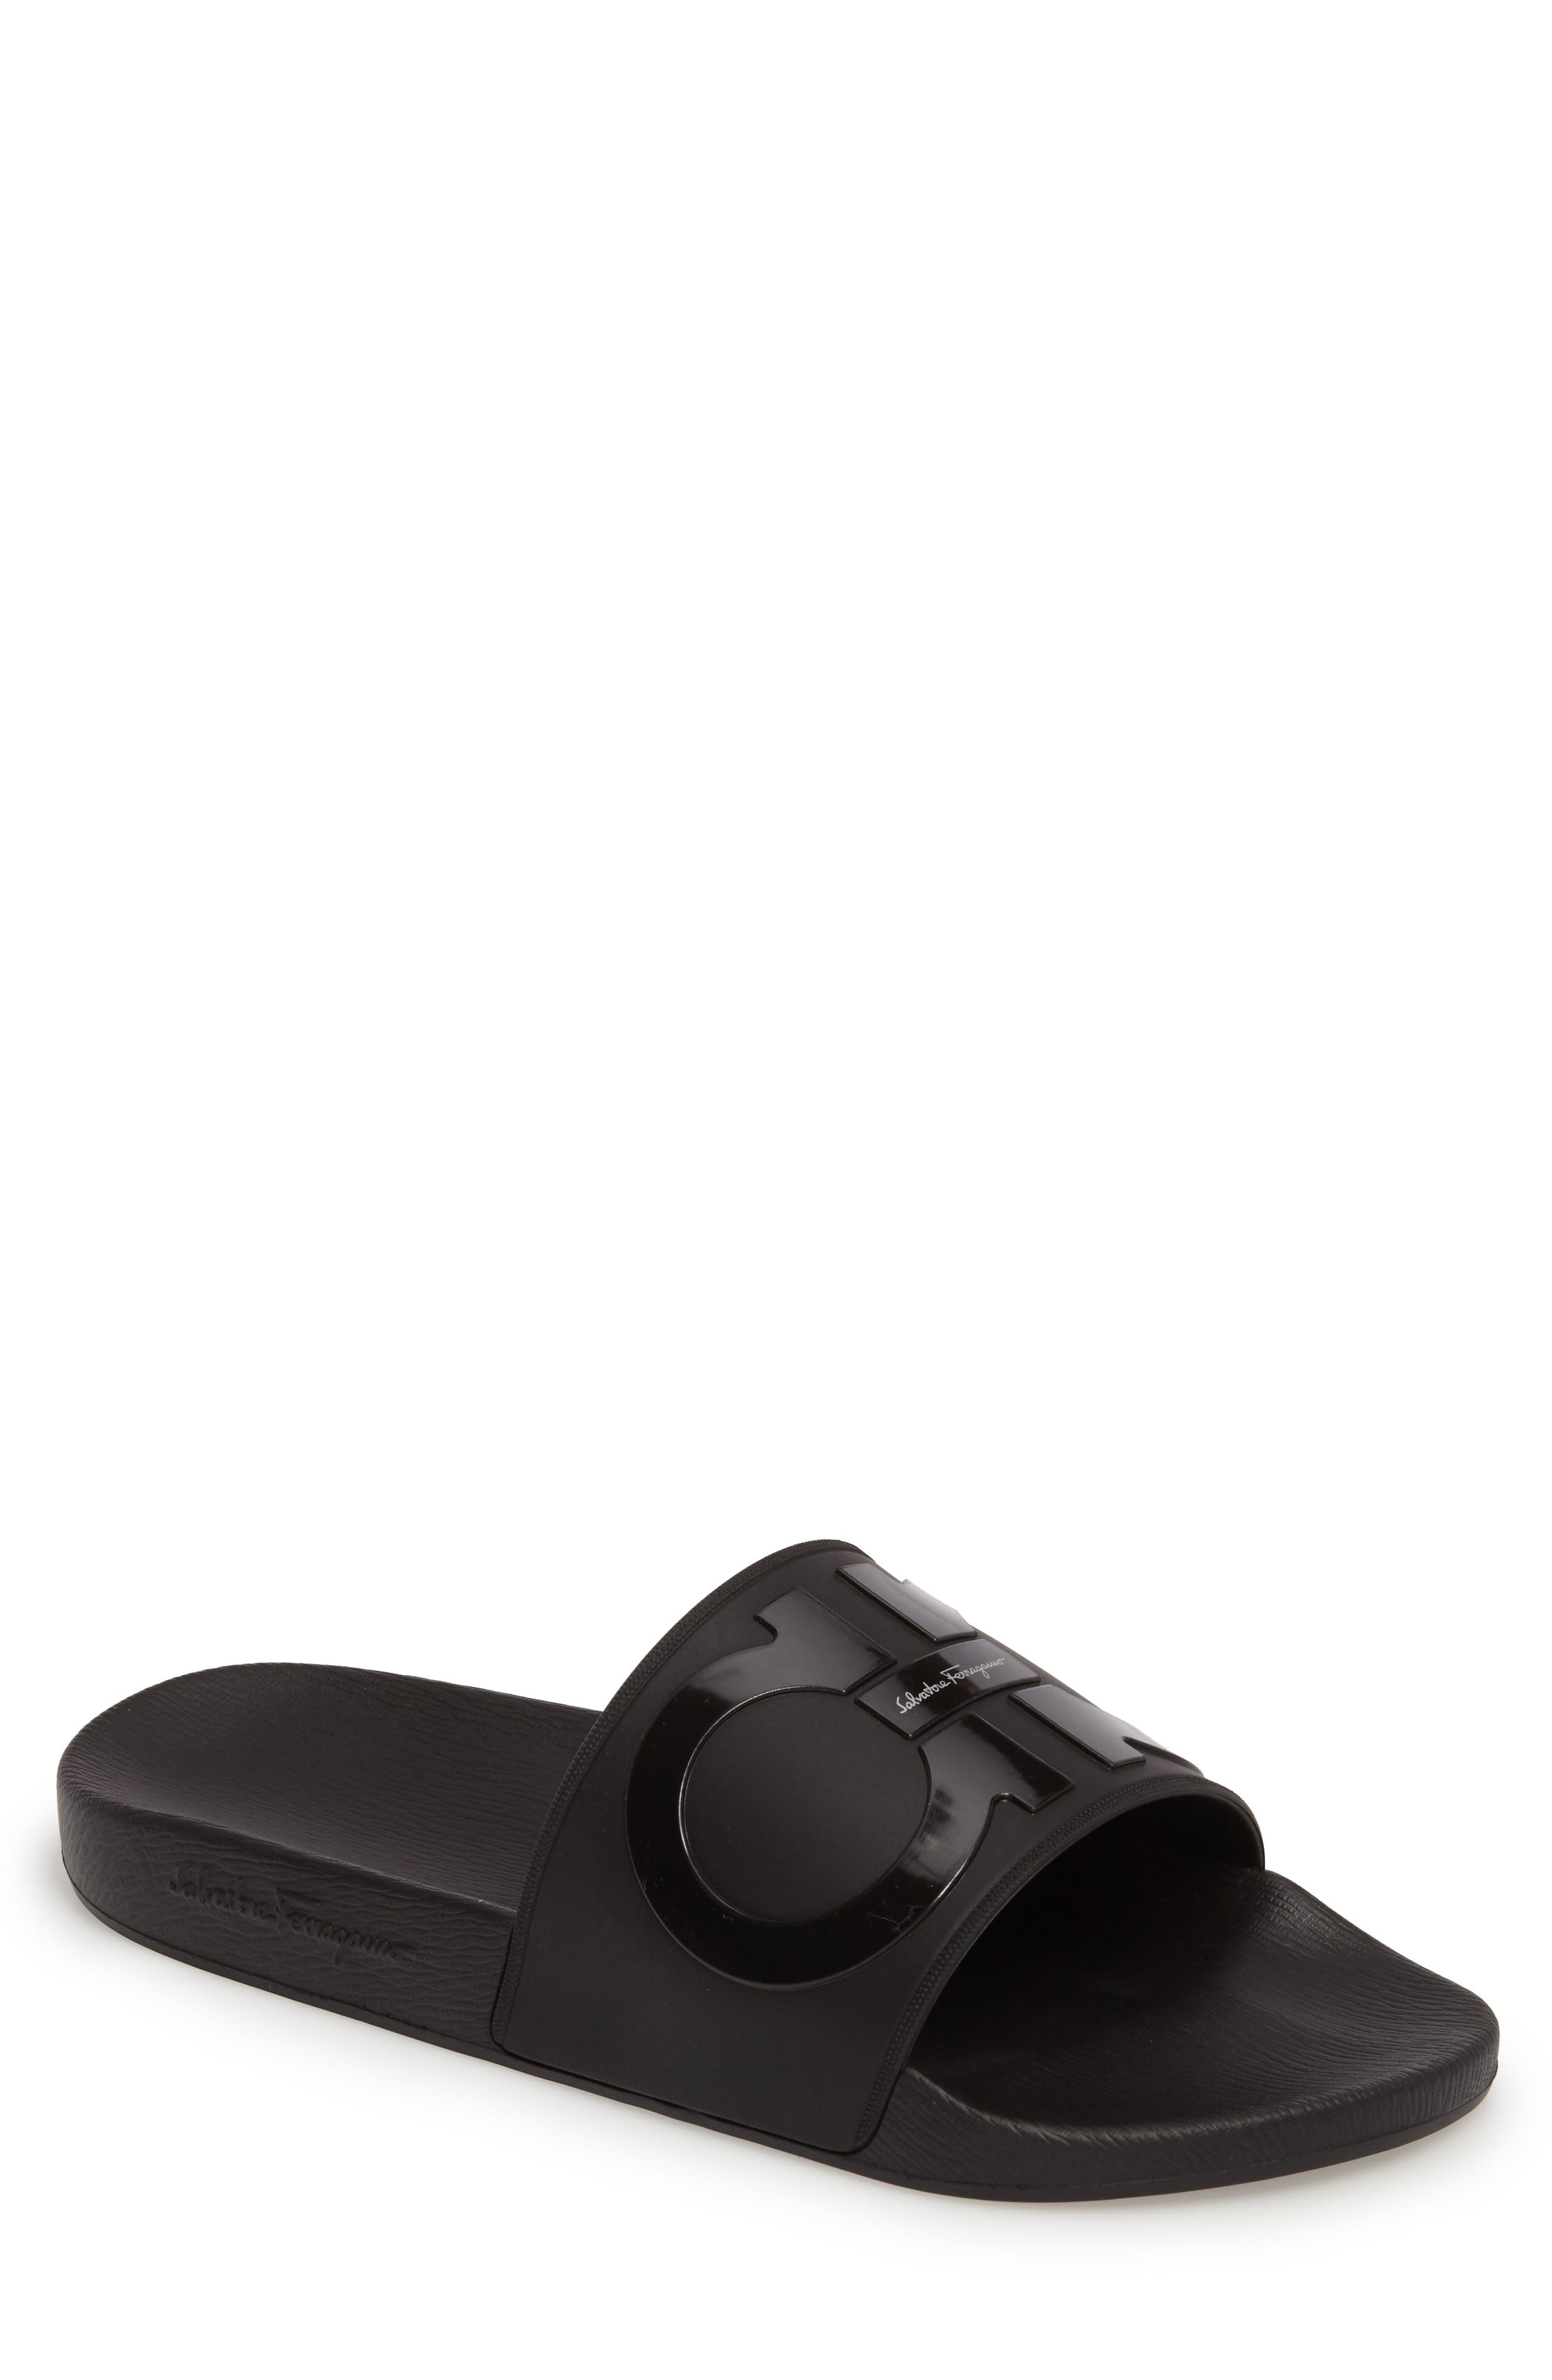 Sandals, Slides \u0026 Flip-Flops | Nordstrom